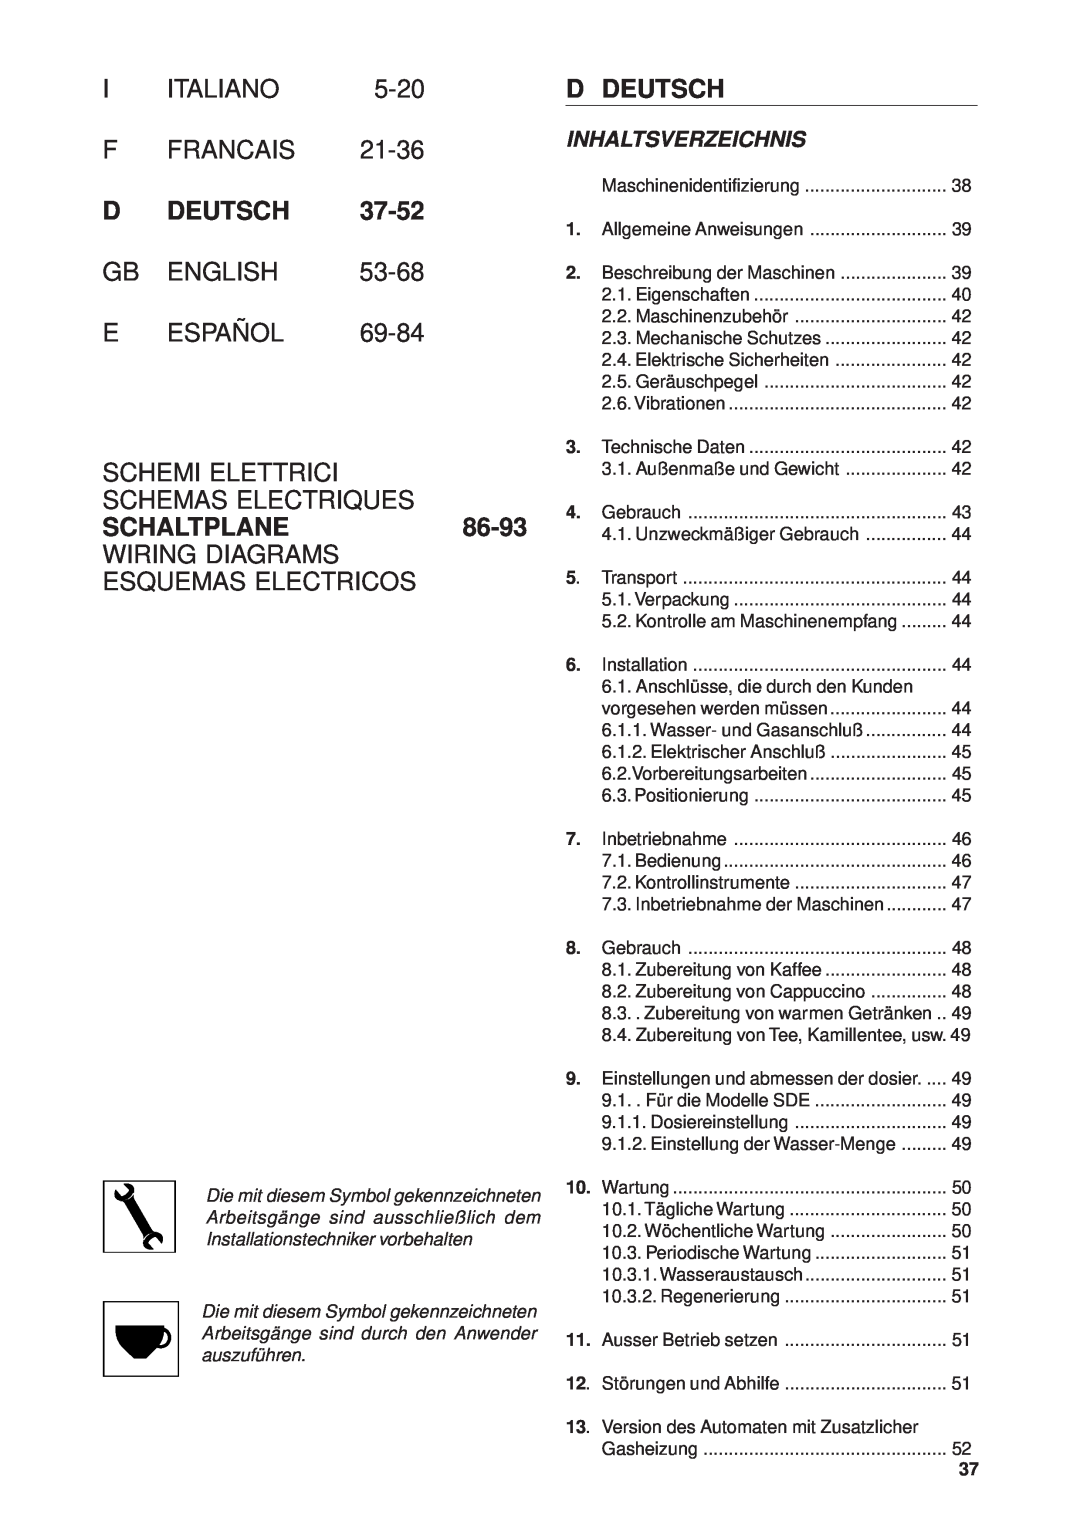 Rancilio Millennium F Francais, D Deutsch, Schemi Elettrici Schemas Electriques, SCHALTPLANE86-93, Inhaltsverzeichnis 